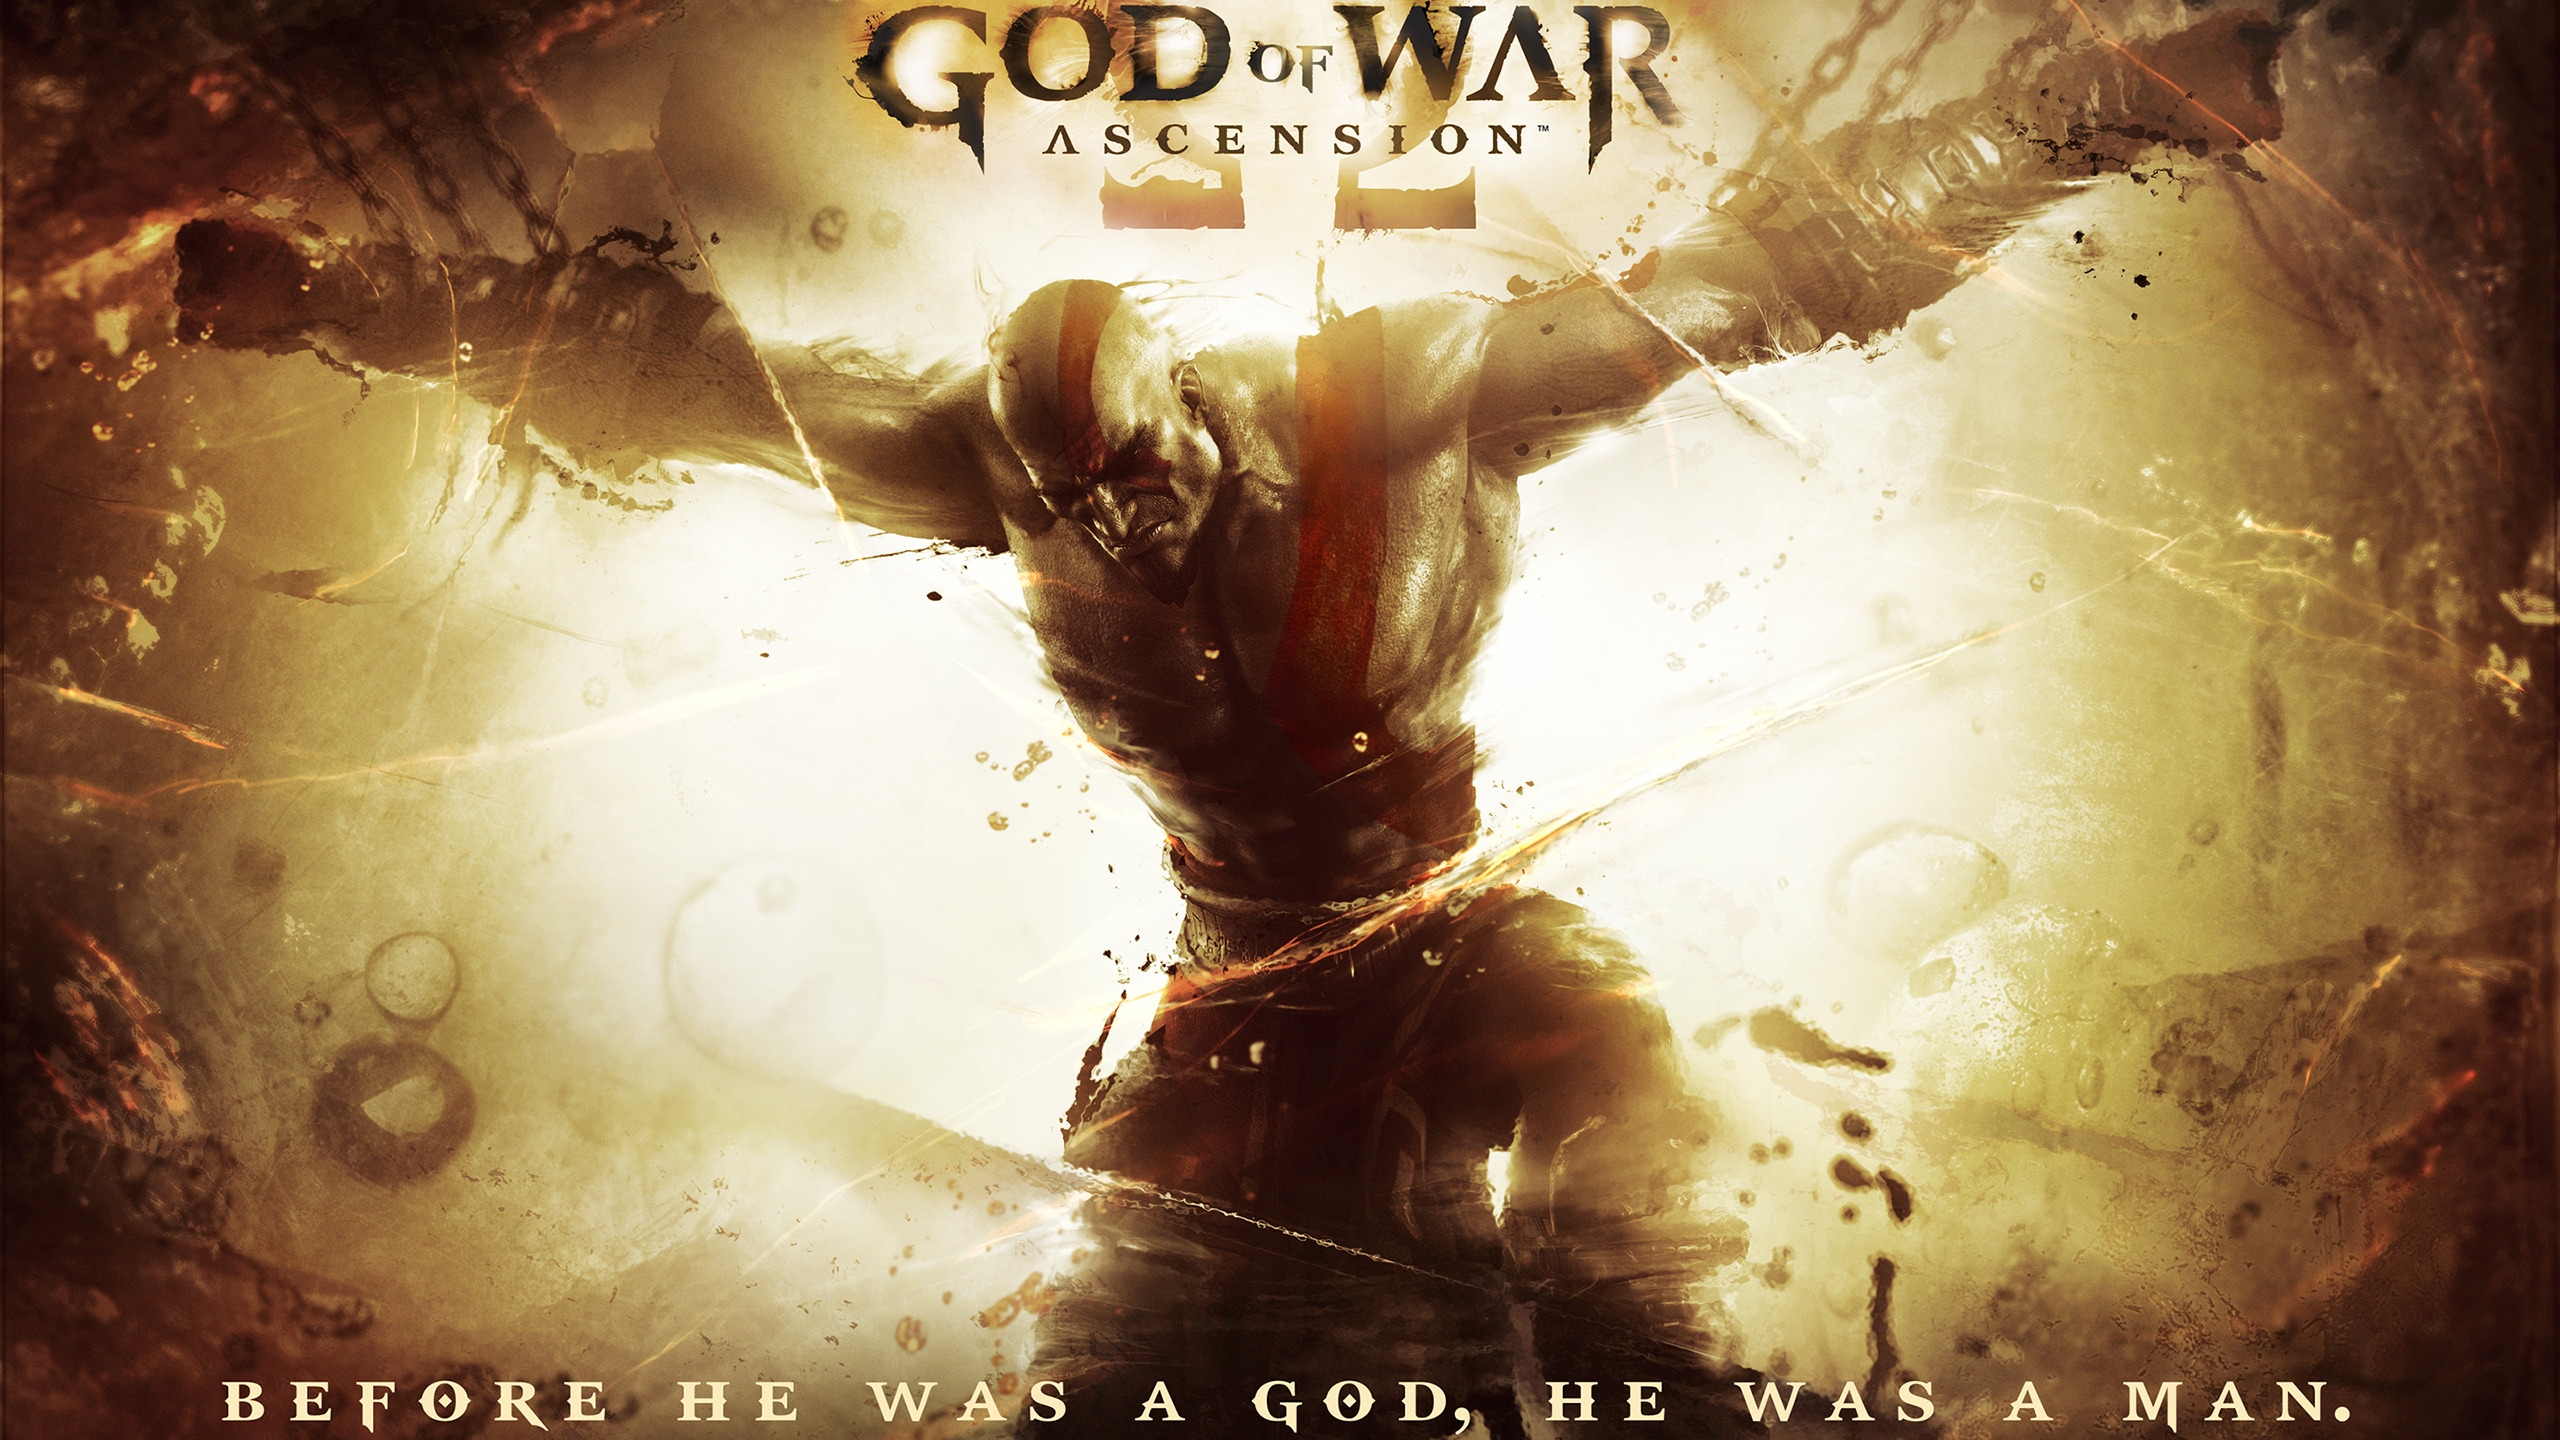 God of War Ascension 2013 for 2560x1440 HDTV resolution